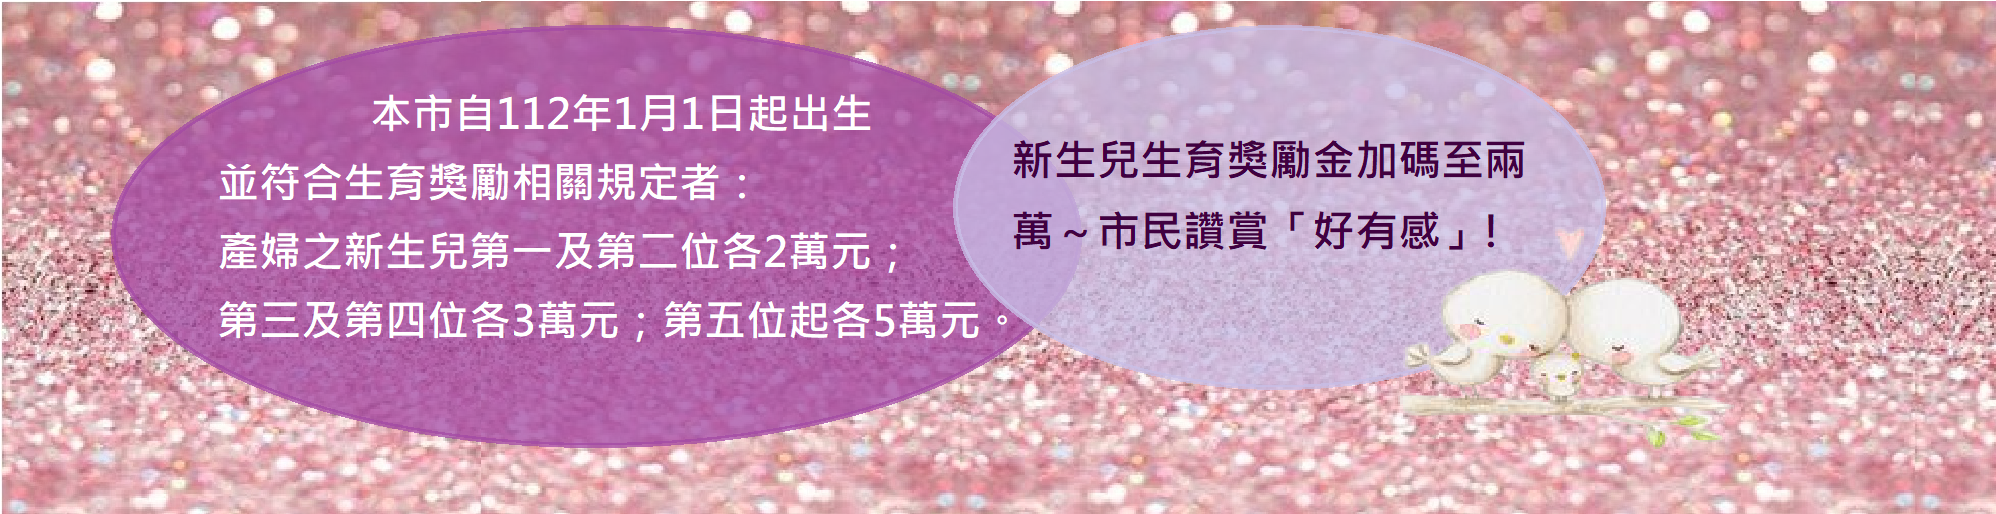 本市自112年1月1日出生並符合臺南市生育獎勵金相關規定者,產婦之新生兒第一位及第二位各20000元第三及第四位各30000元第五位起各50000元